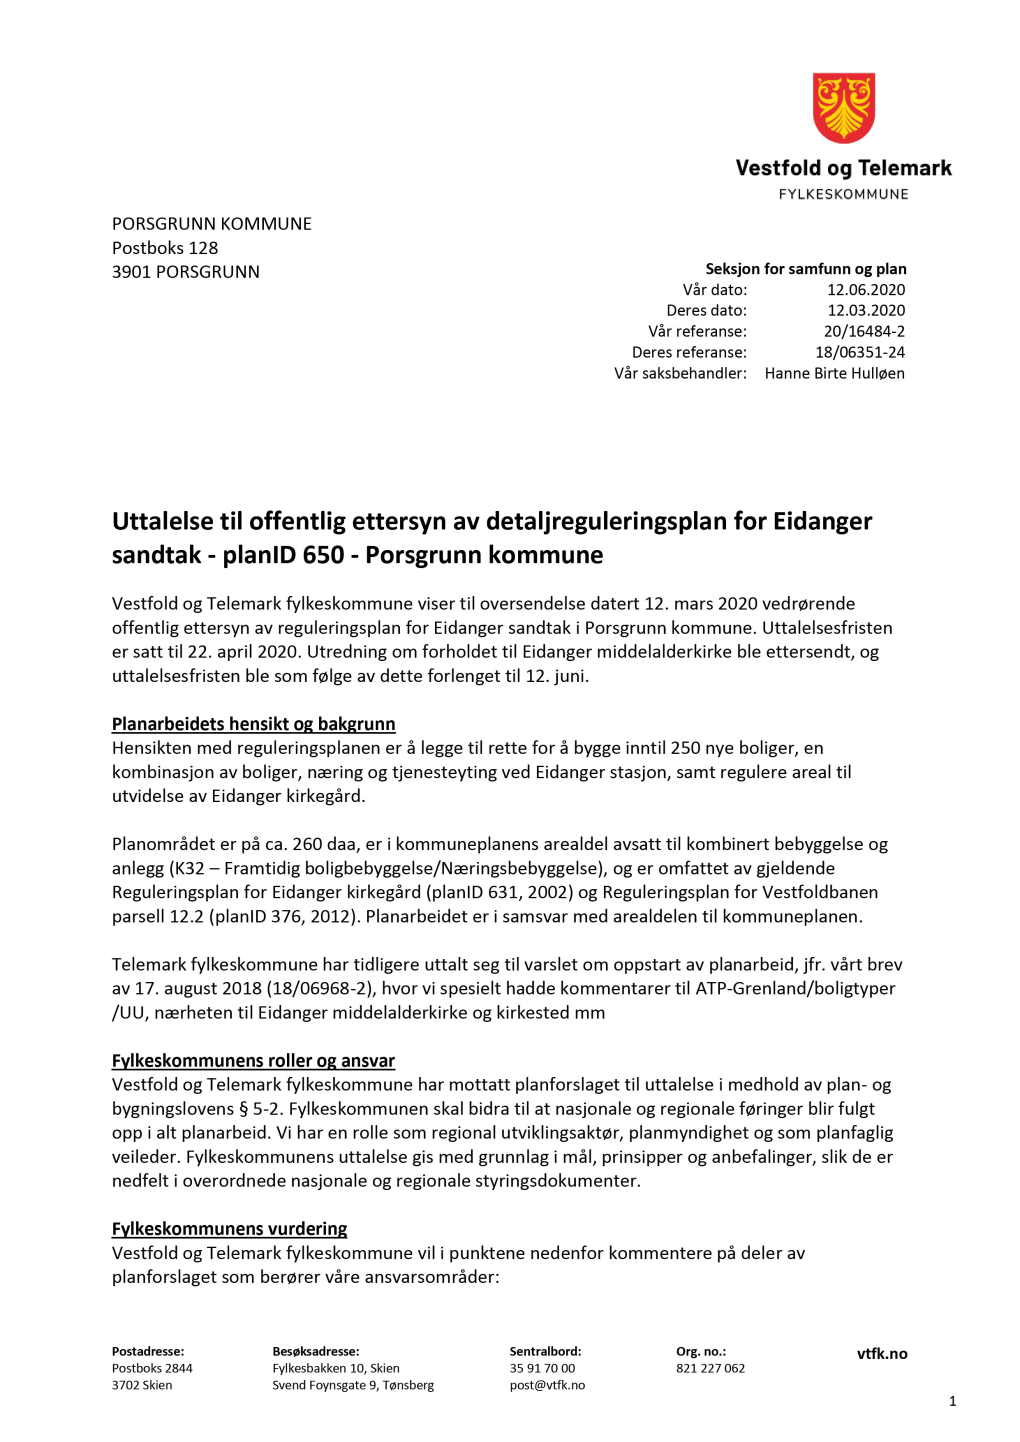 Uttalelse Til Offentlig Ettersyn Av Detaljreguleringsplan for Eidanger Sandtak - Planid 650 - Porsgrunn Kommune